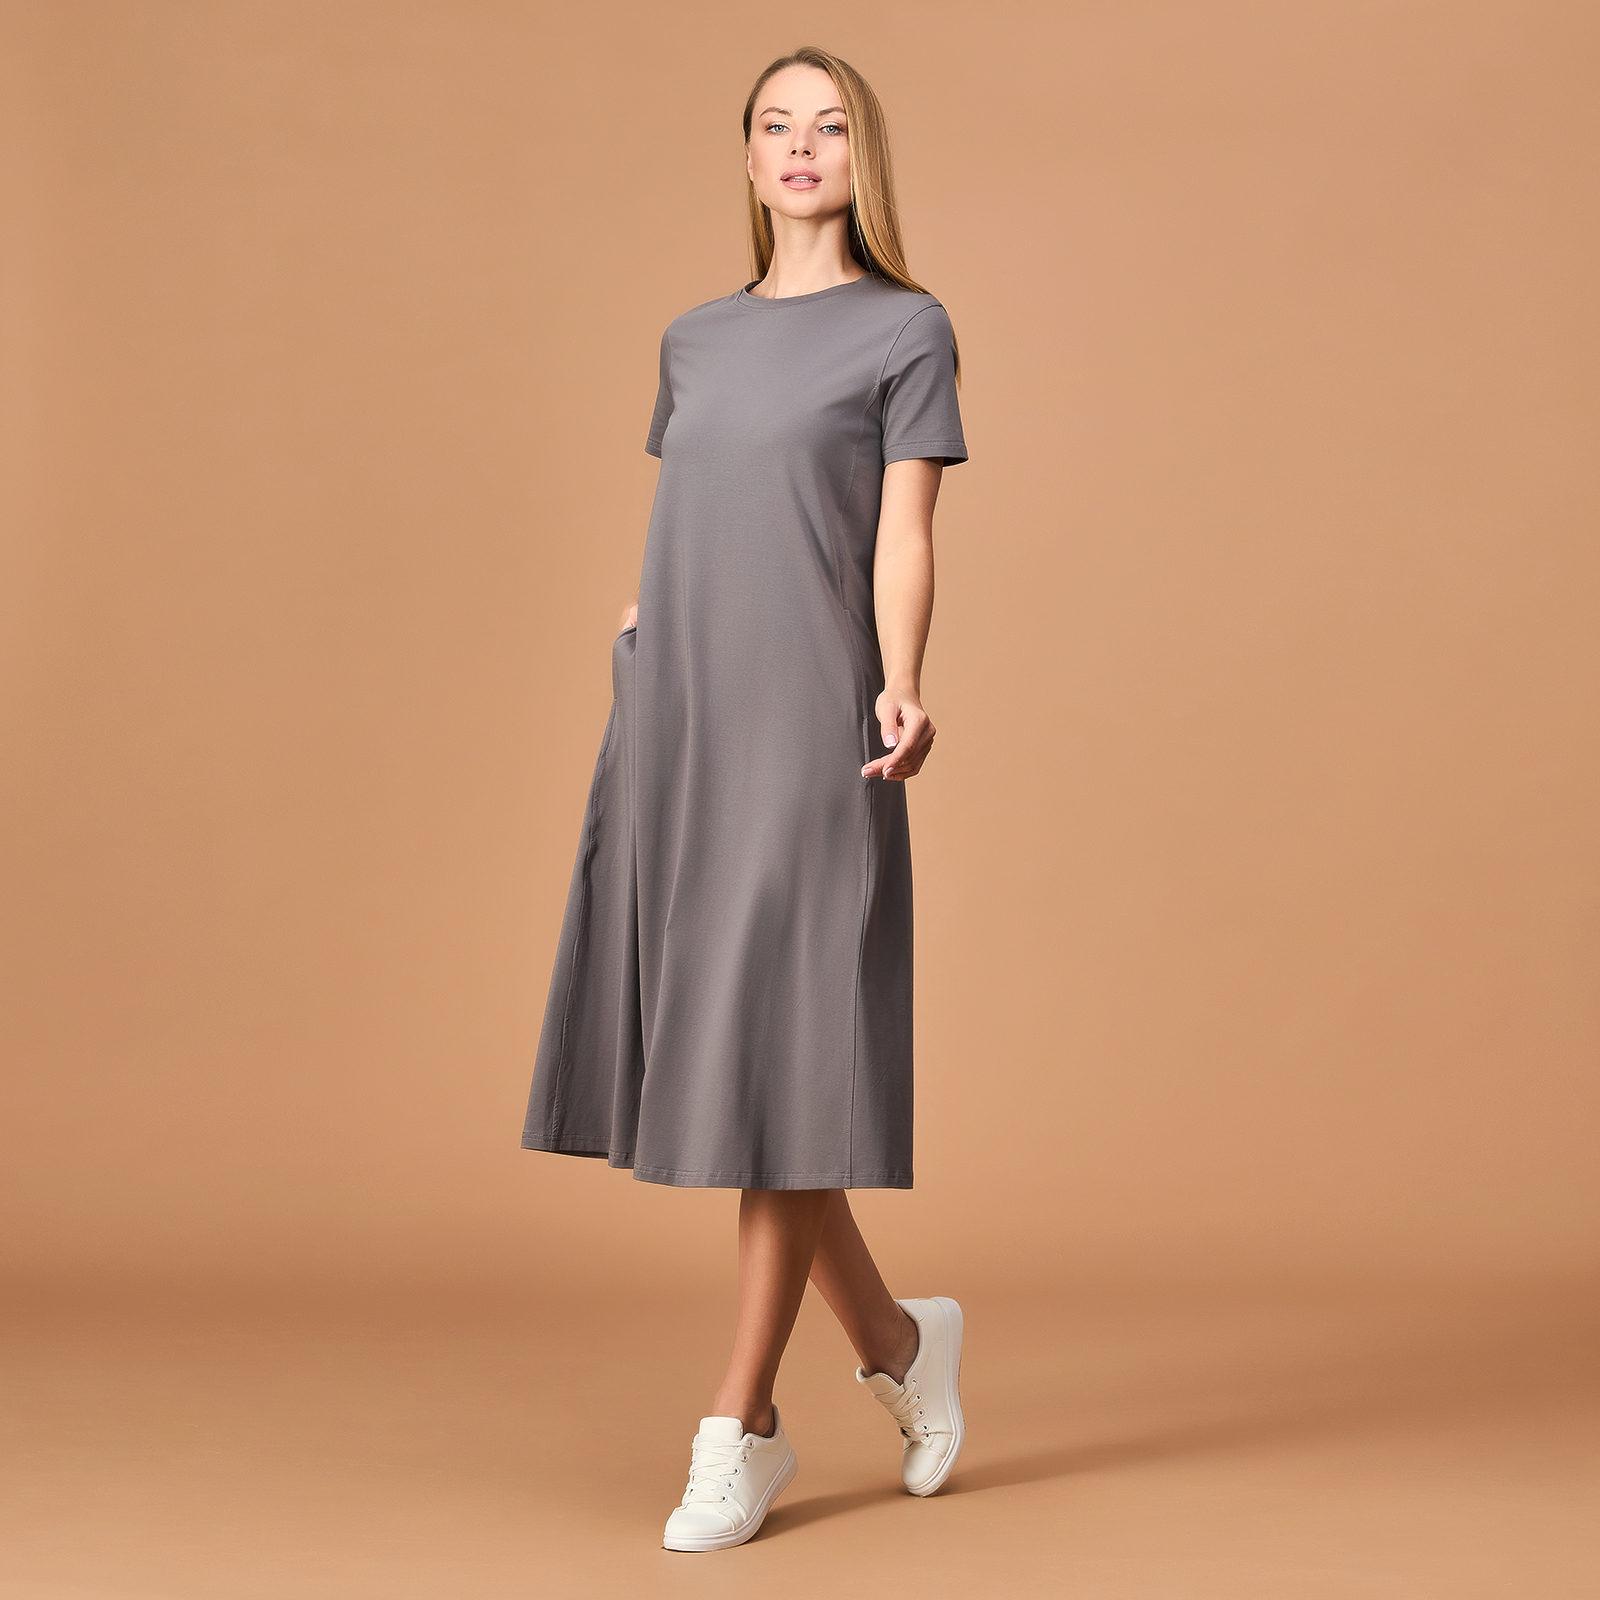 Платье Massimo, серое CozyHome, цвет серый, размер 42-44